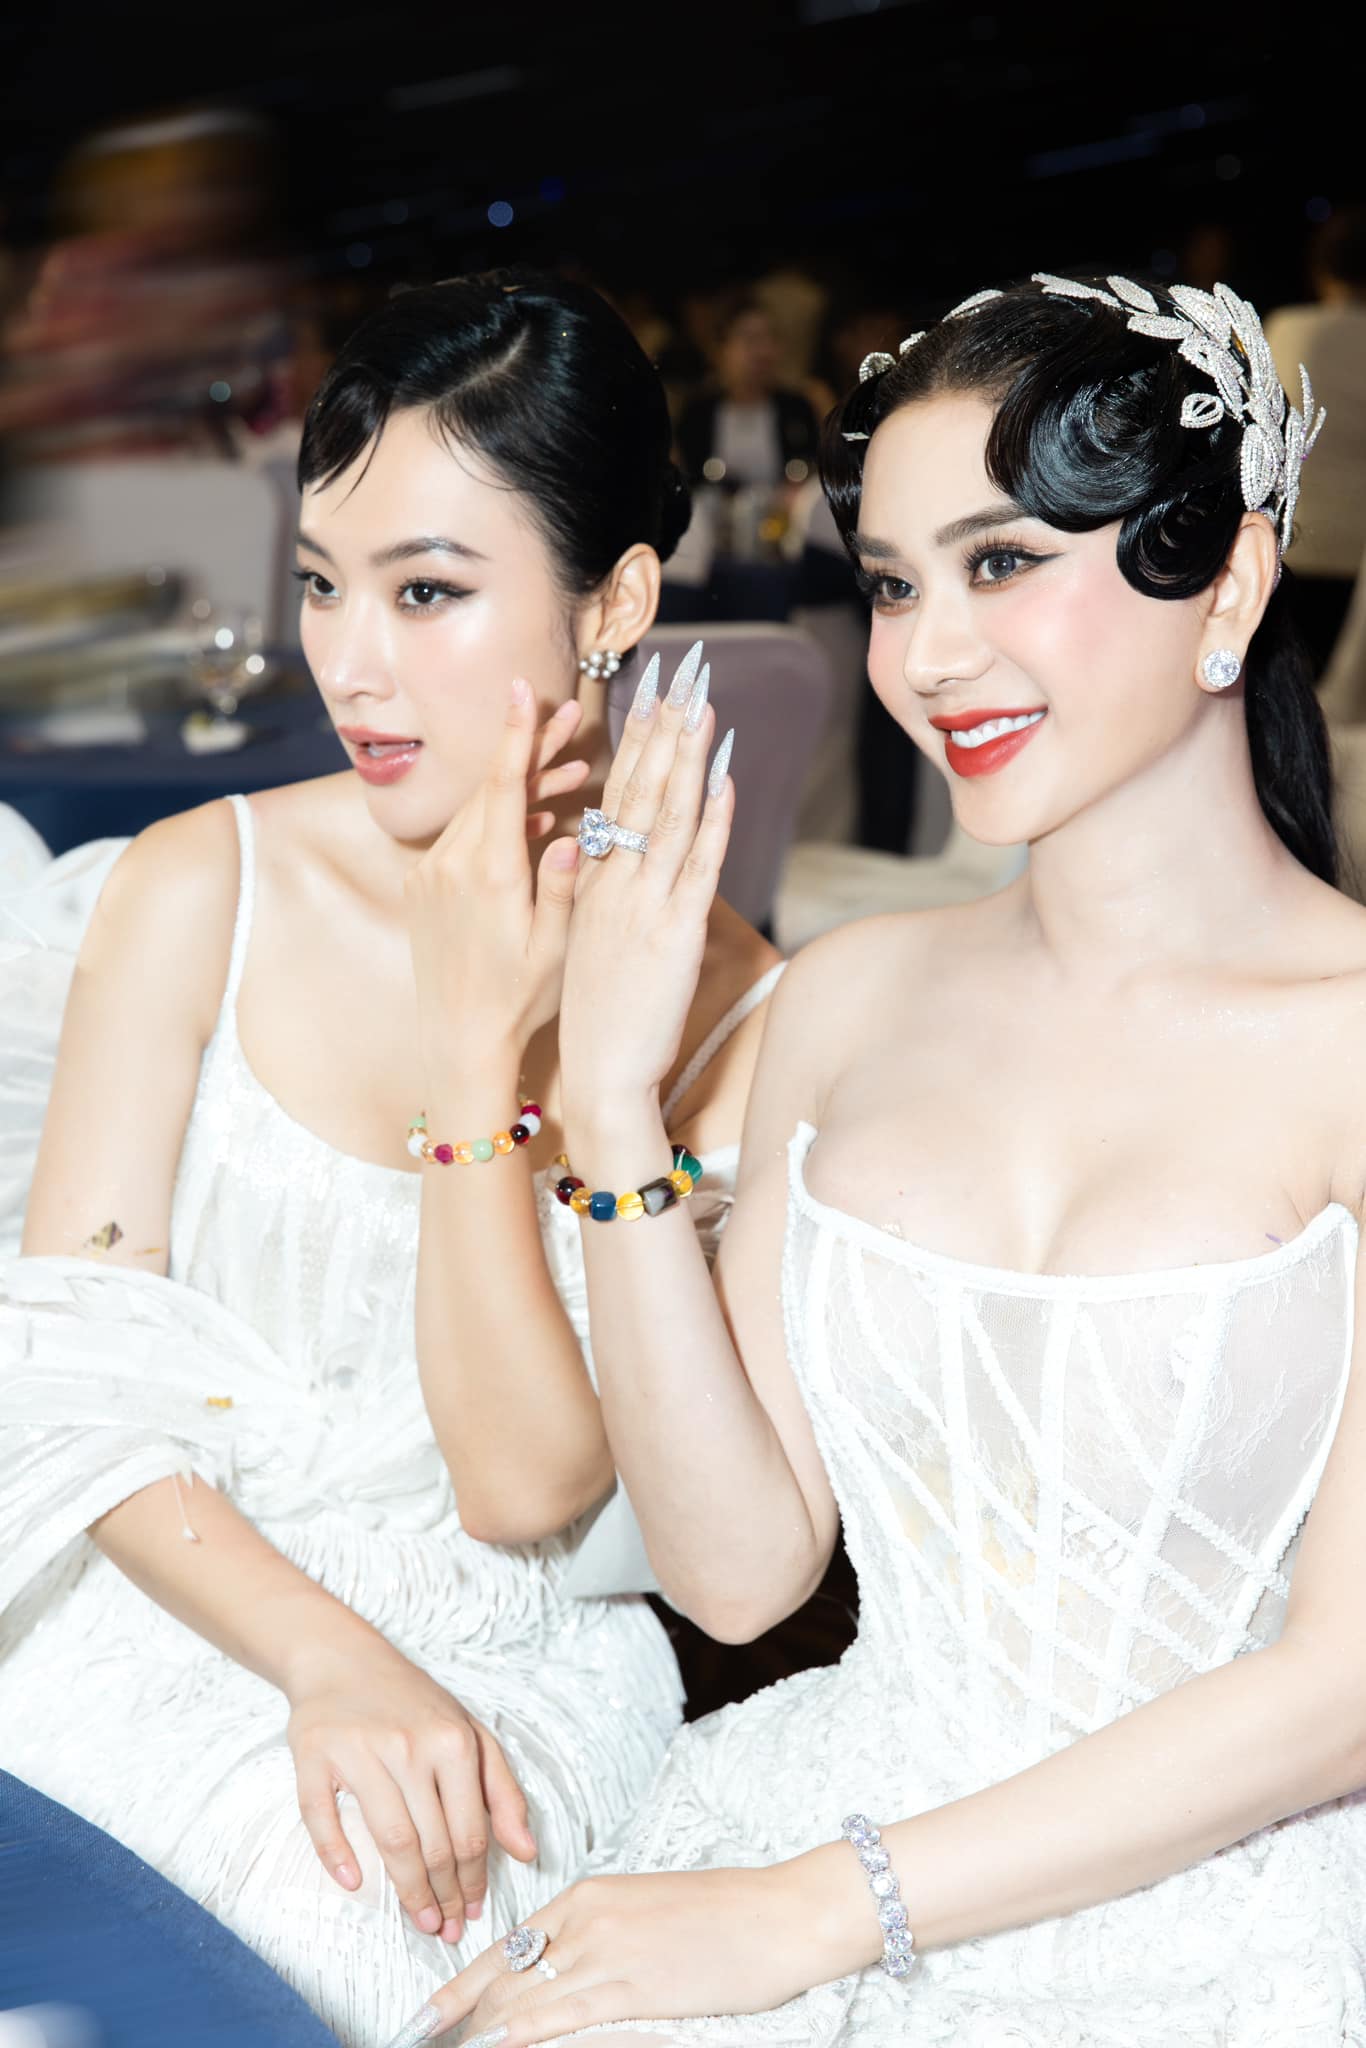 Hơn Angela Phương Trinh gần 20 tuổi, "công chúa" Lâm Khánh Chi đẹp không kém đàn em - 2